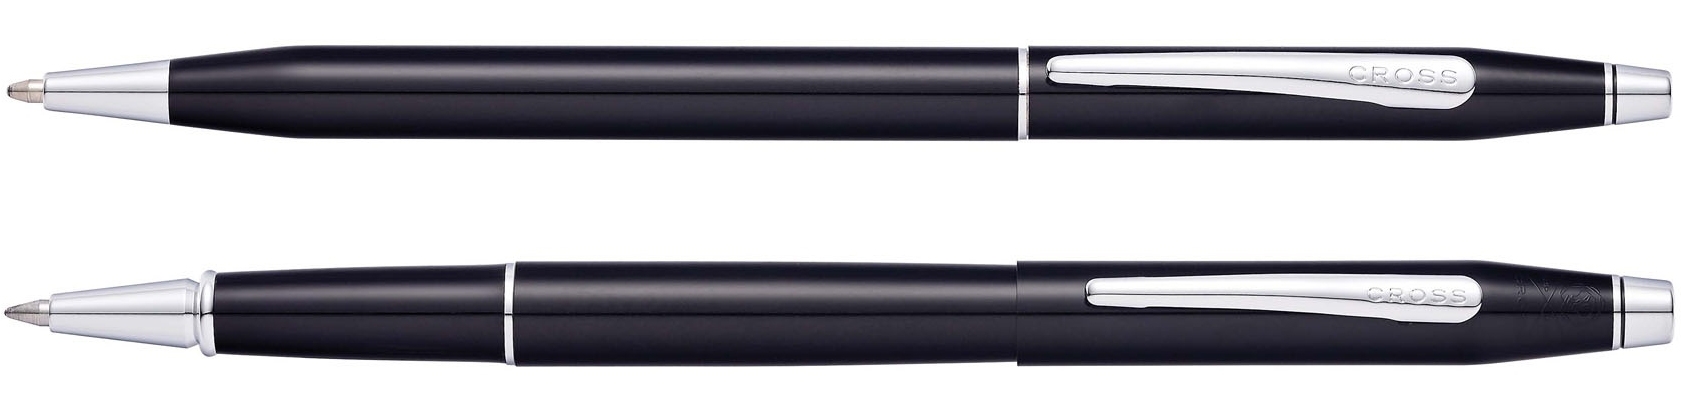 Набор Cross Classic Century Black Lacquer: шариковая ручка и ручка-роллер, цвет - черный, черный, латунь